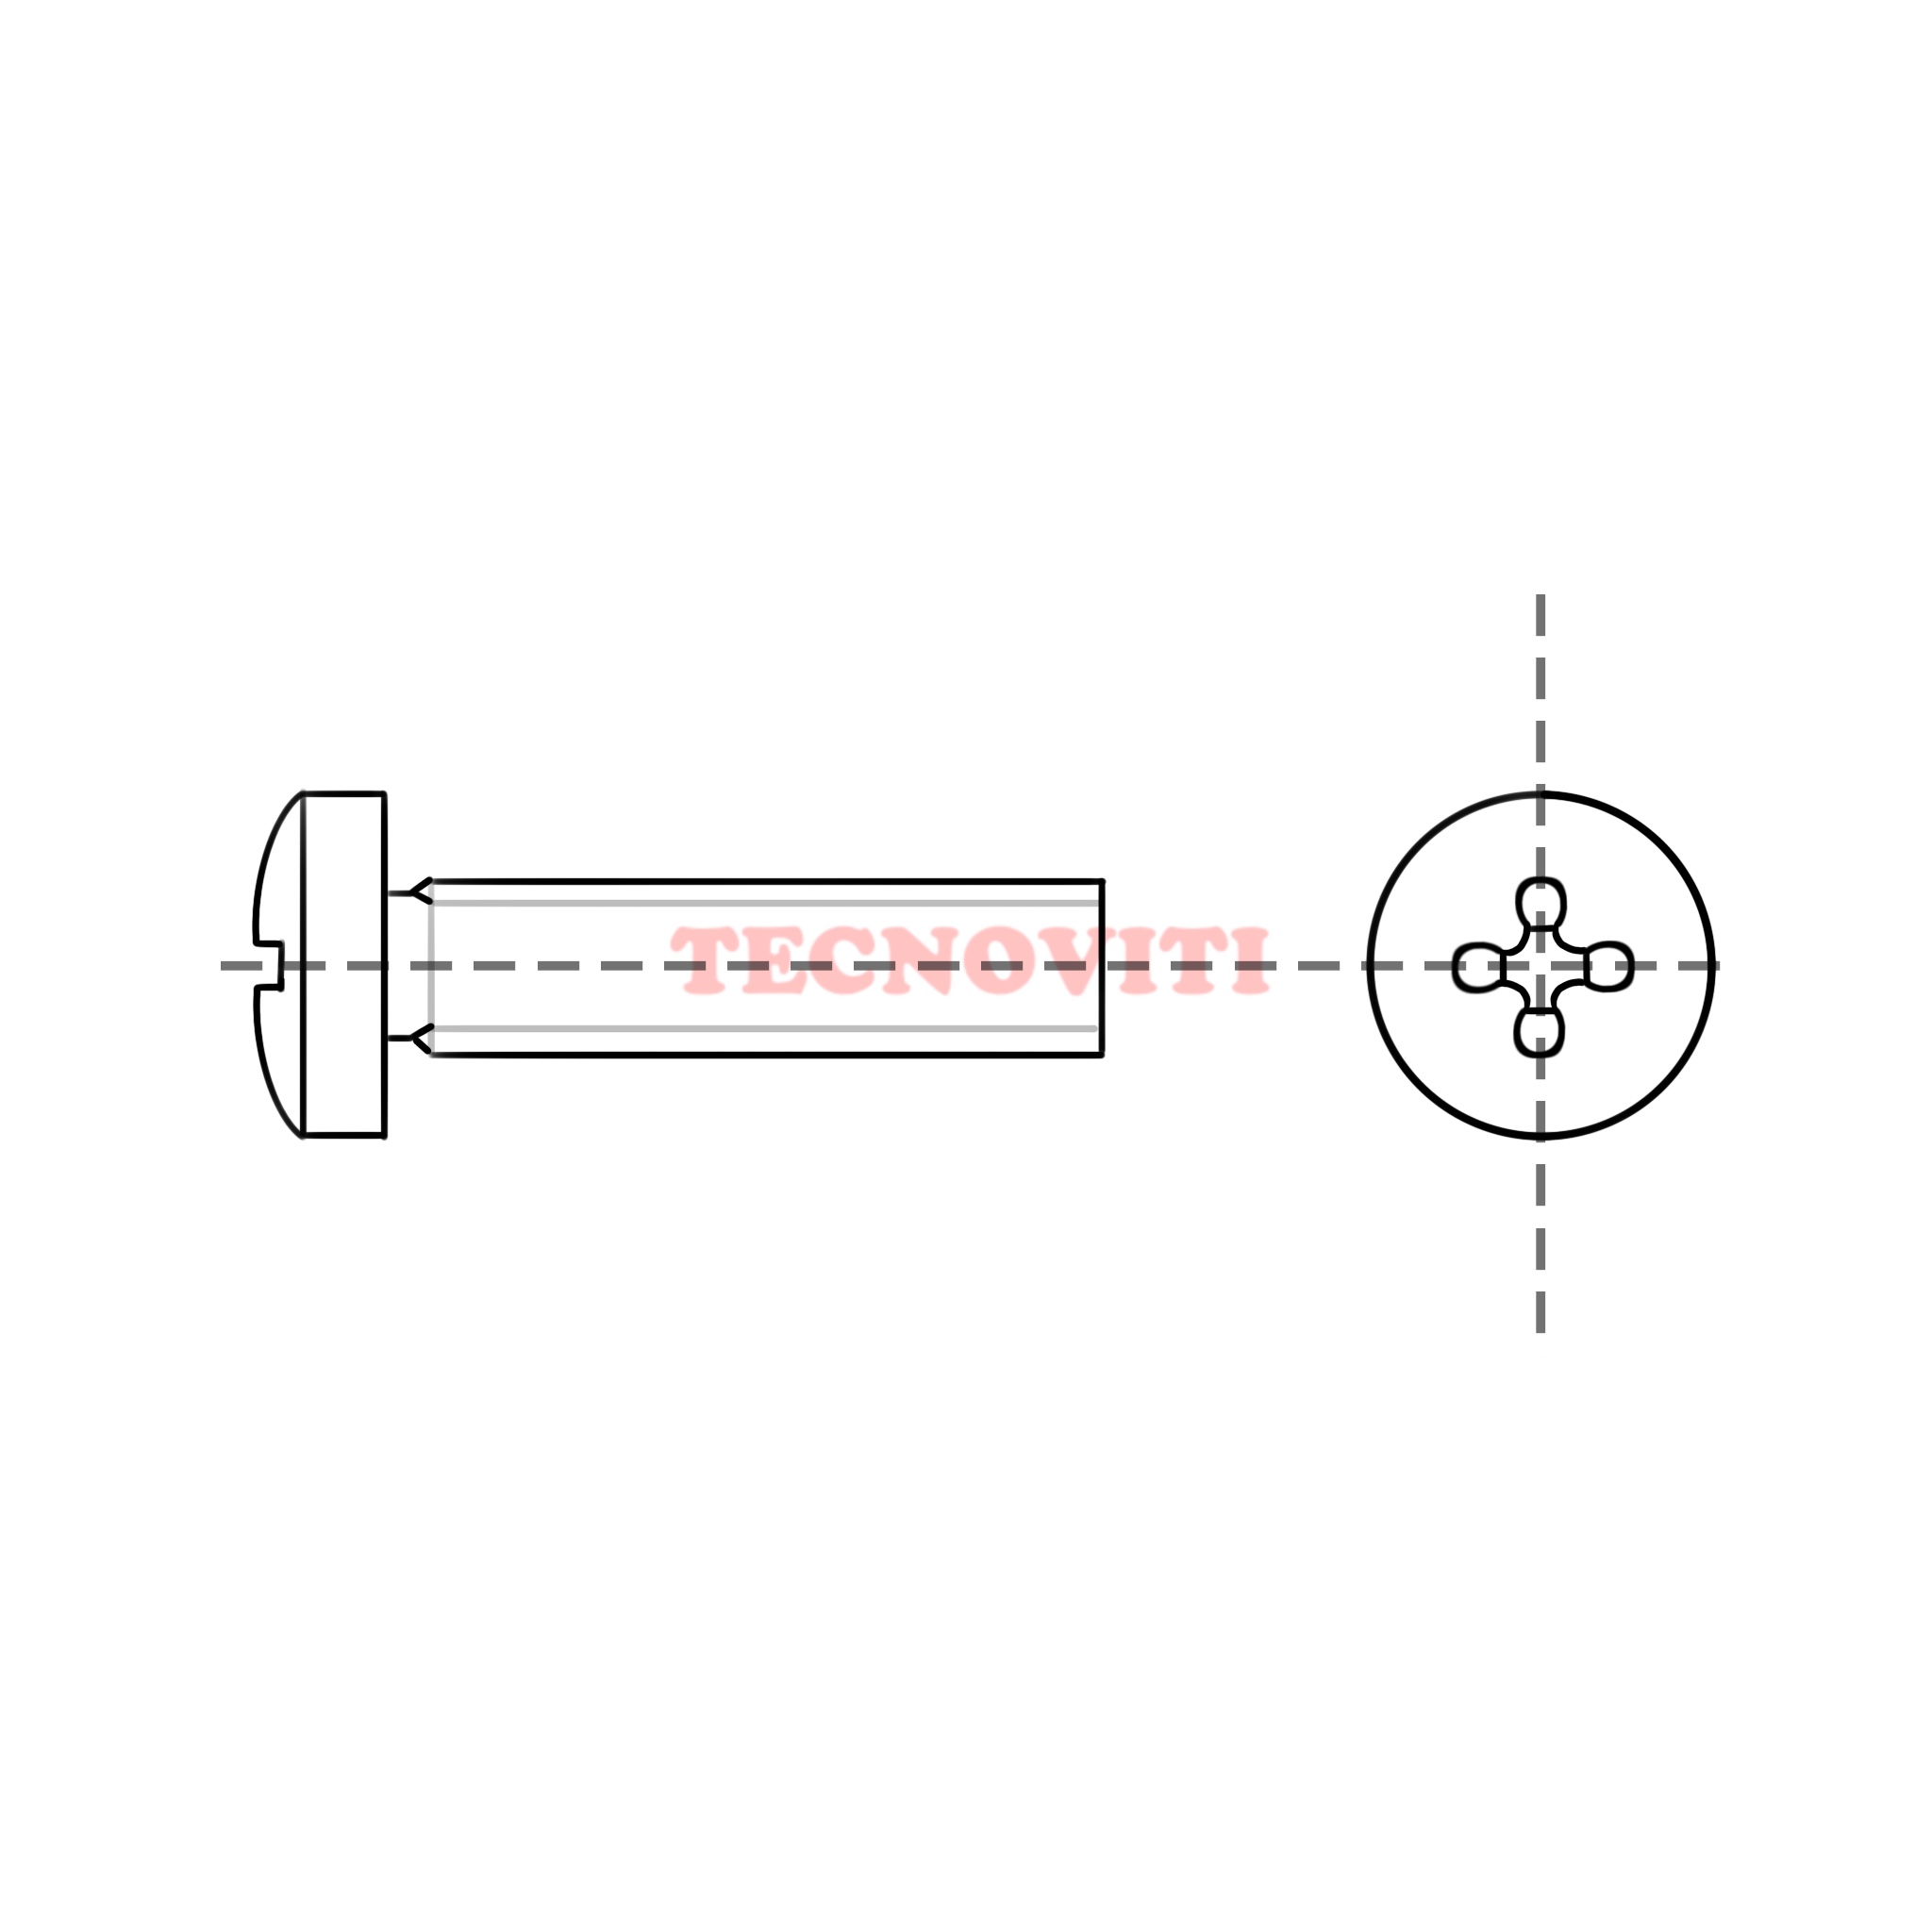 Disegno tecnico Viti con testa cilindrica ed impronta croce (TC+) in pollici, passo inglese WHITWORTH (BSW). TECNOCODE: 7687WH